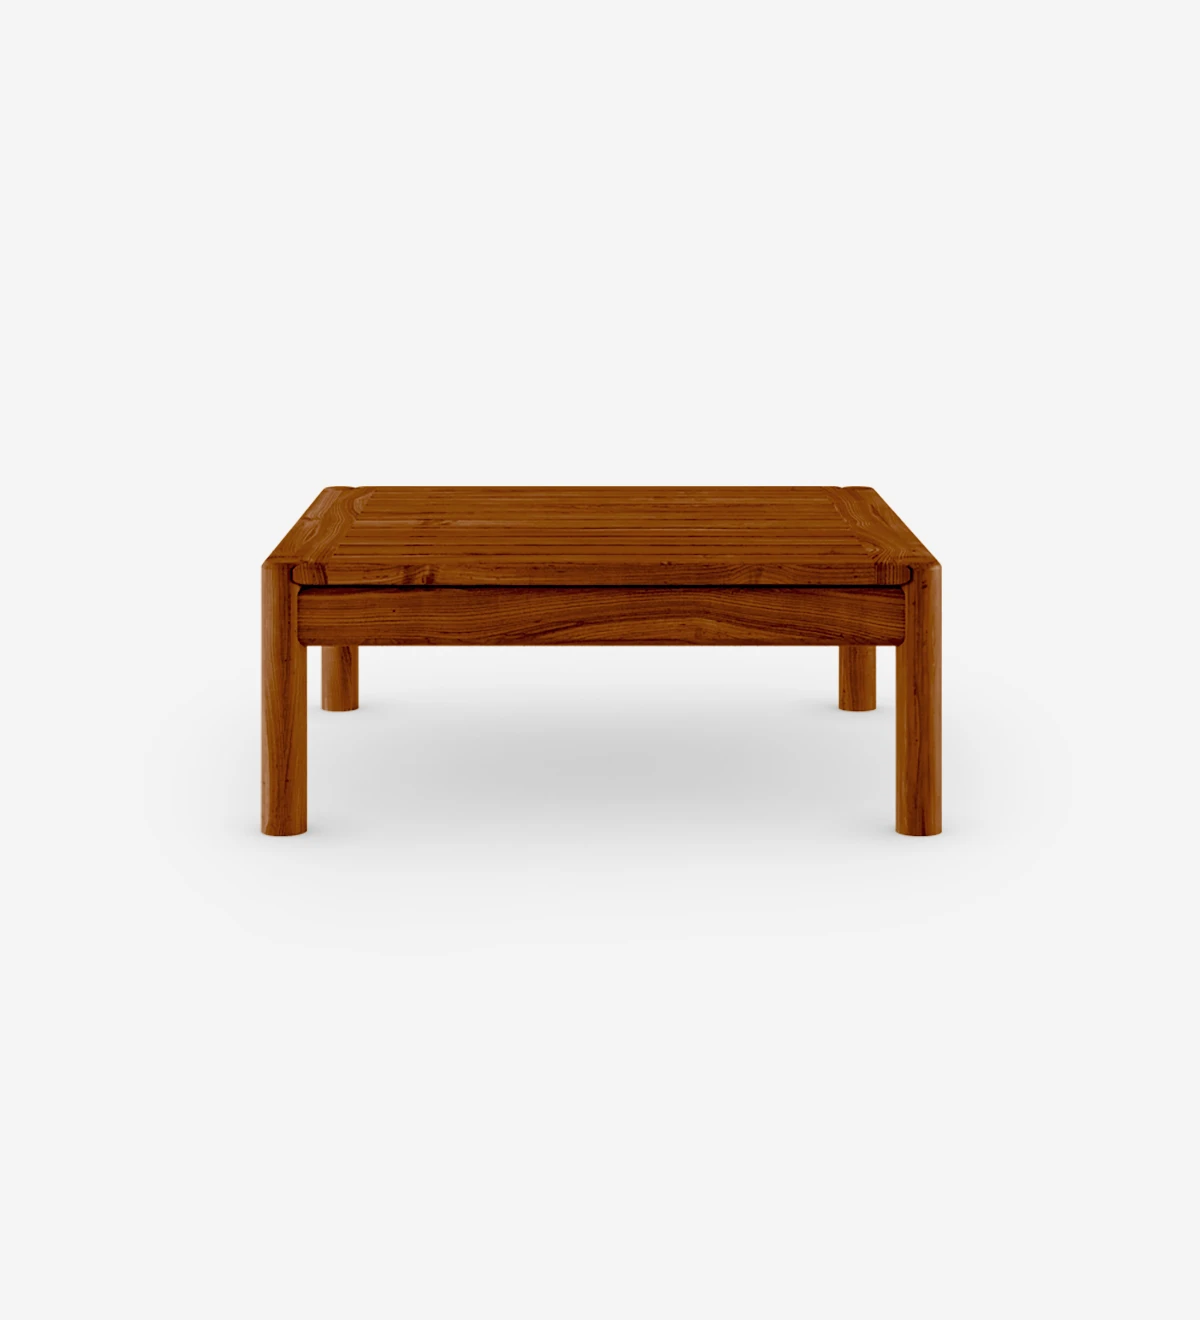 Mesa de centro cuadrada en madera natural color miel.